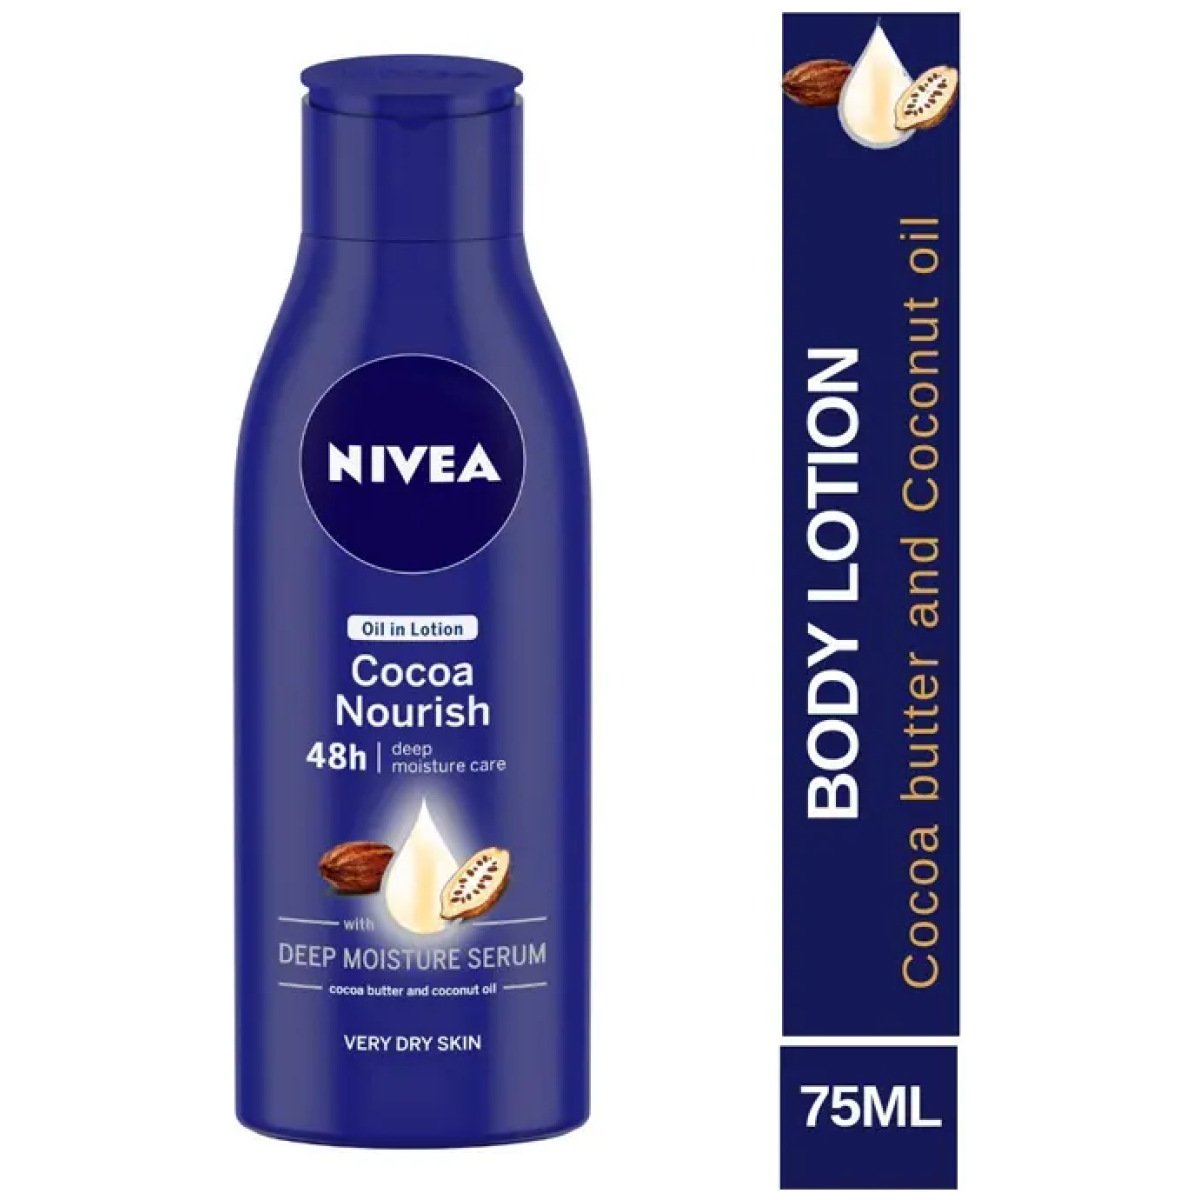 Nivea Oil In Nourish Cocoa Nourish 48H Body Lotion For Very Dry Skin 200Ml